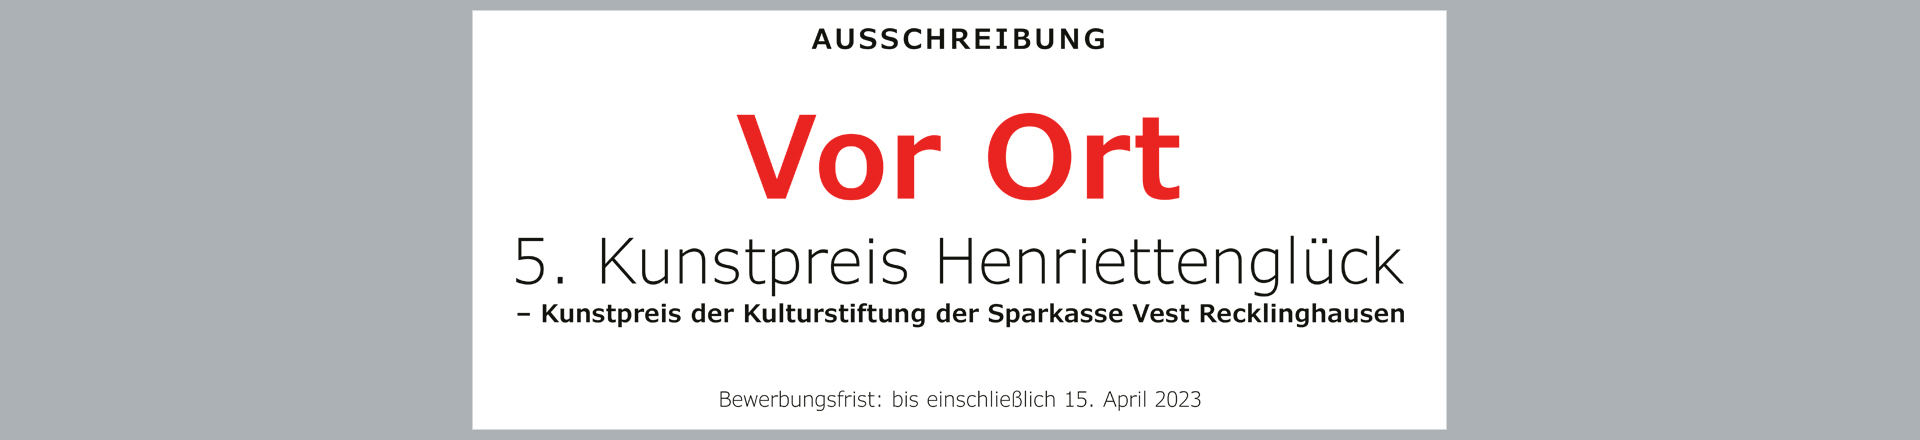 5. Kunstpreis Henriettenglück Vor Ort 2023